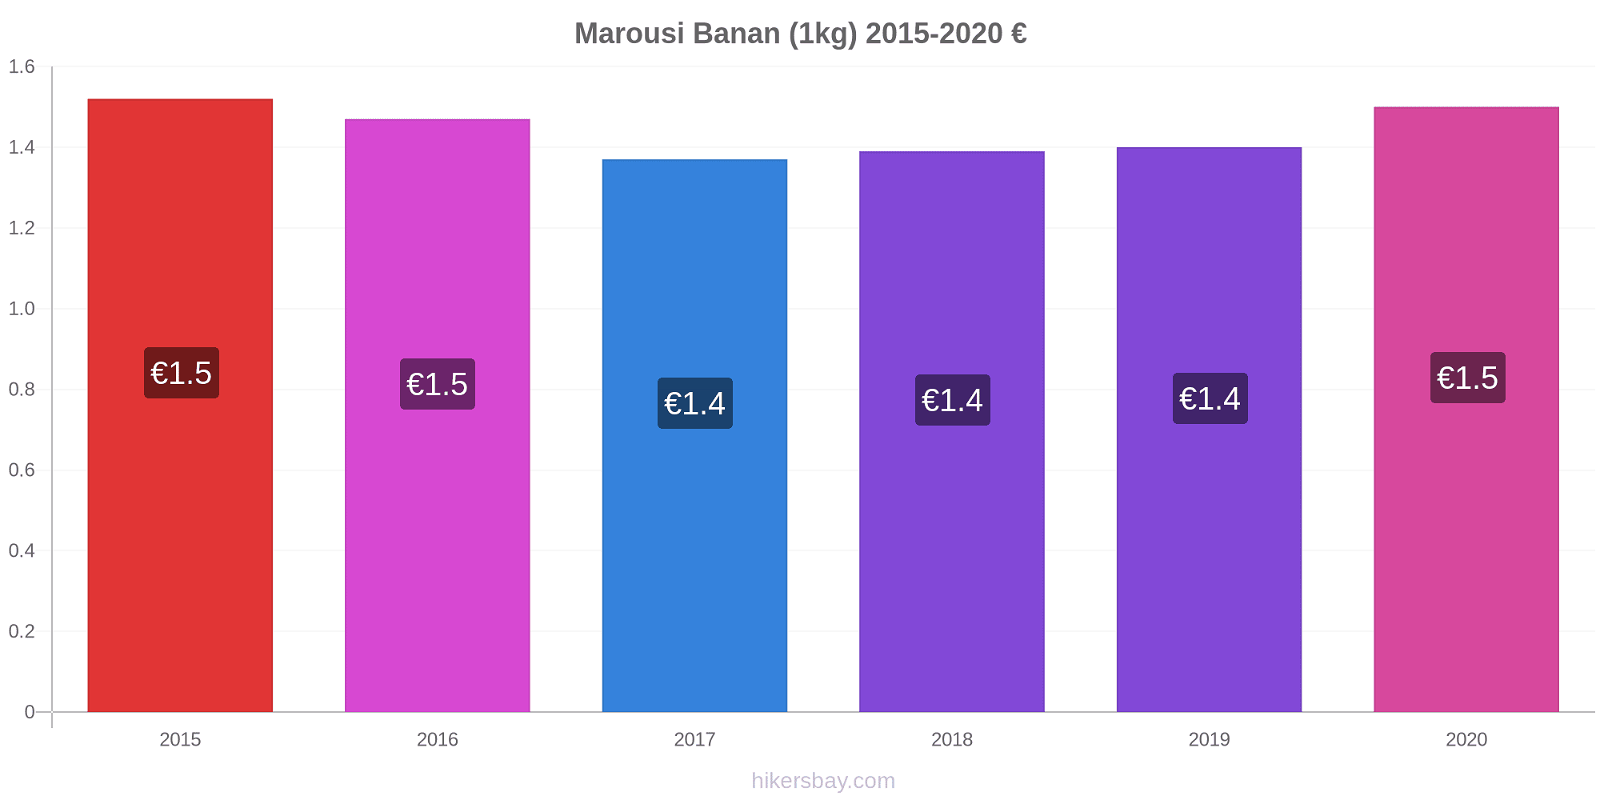 Marousi prisendringer Banan (1kg) hikersbay.com